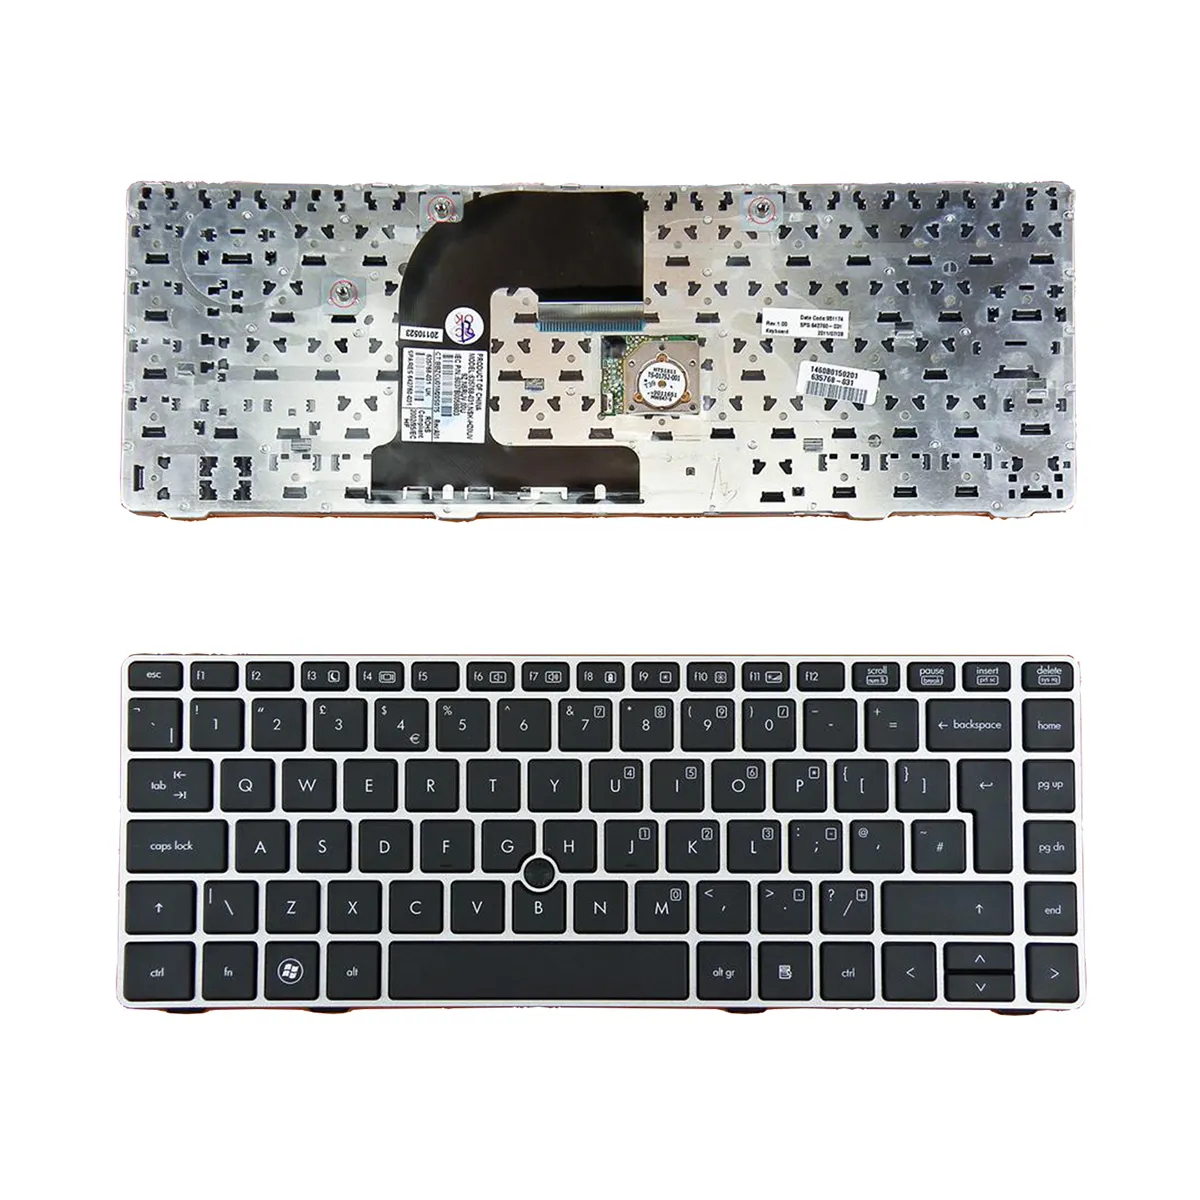 Teclado NUEVO Reino Unido para HP EliteBook 8460p Plata MARCO NEGRO Reino Unido Disposición sustituir el teclado de reparación del teclado